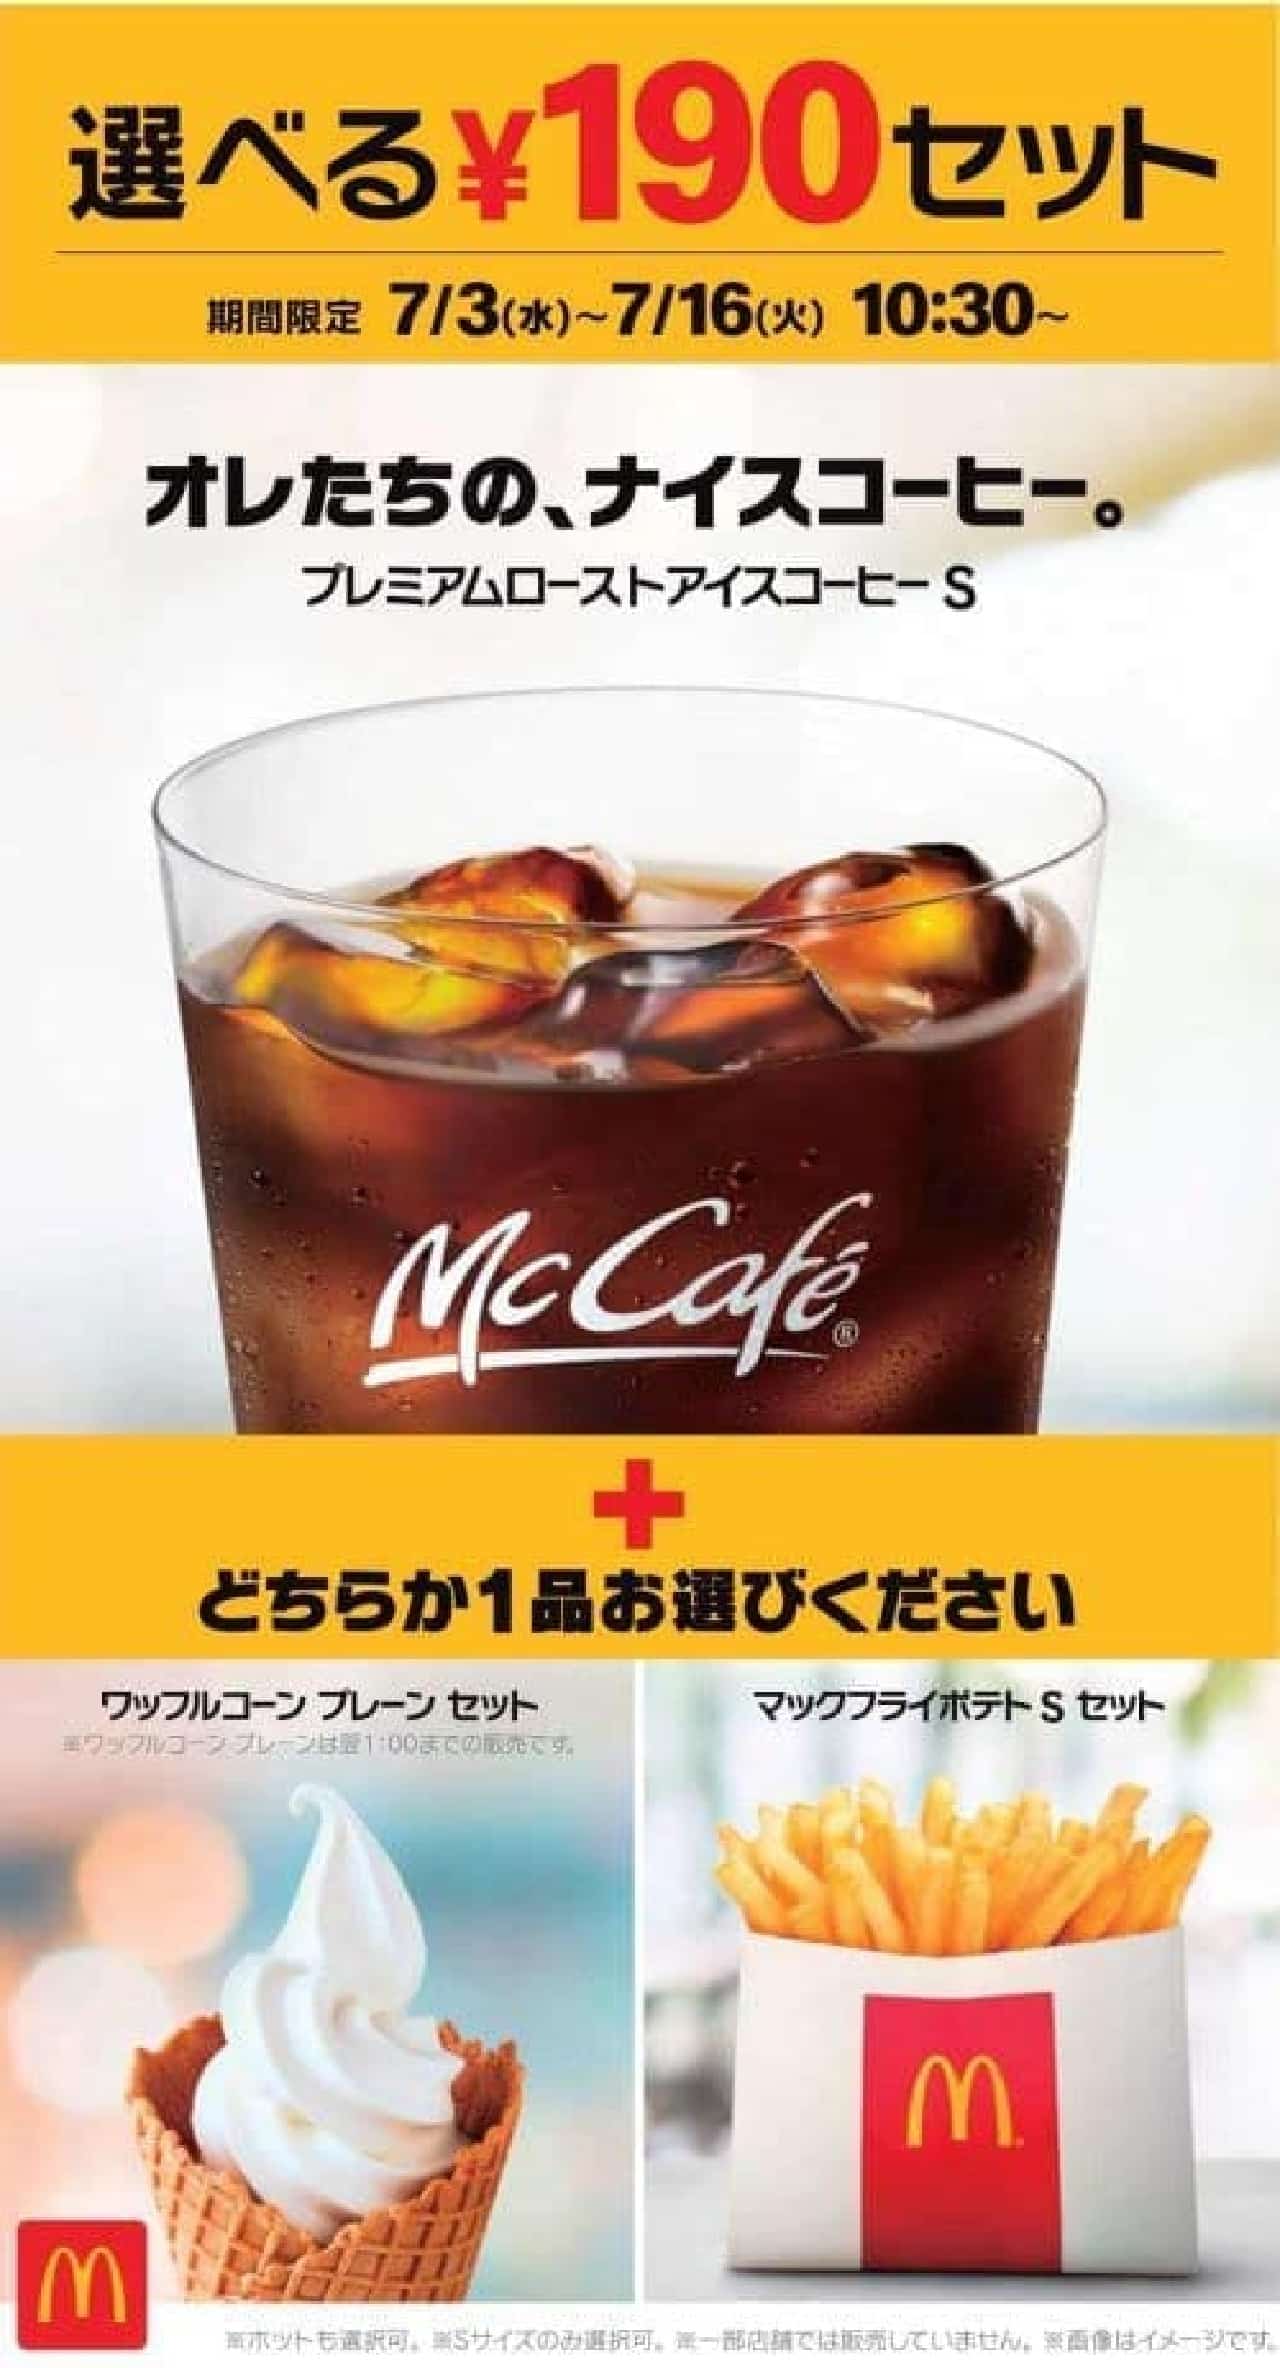 McDonald's "Choice of ¥ 190 set"